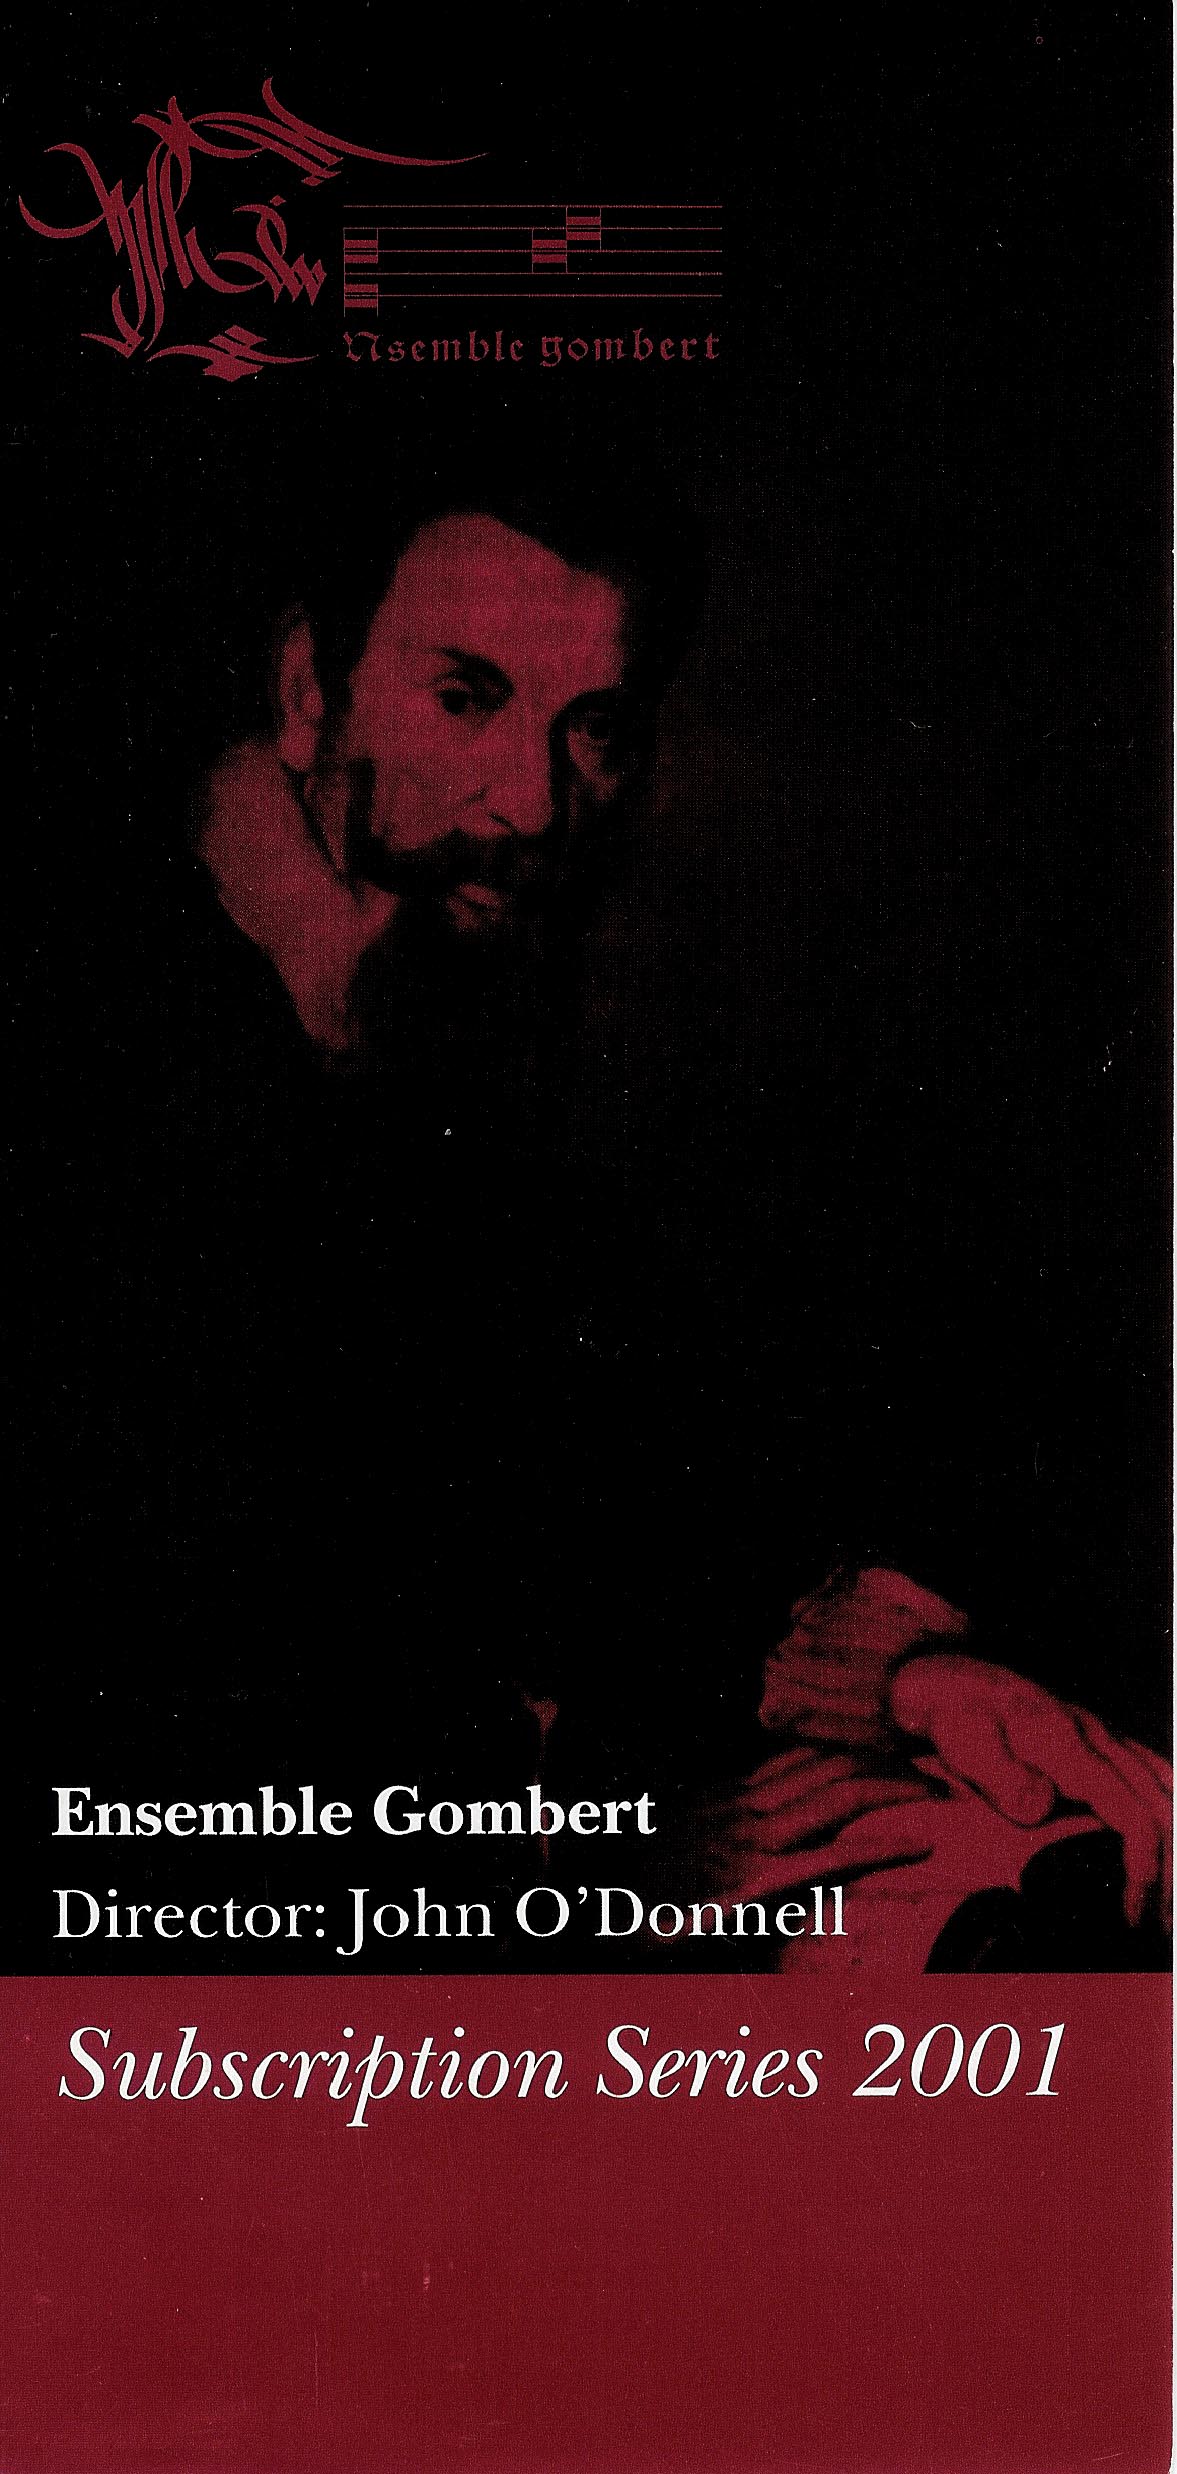 2001 Brochure